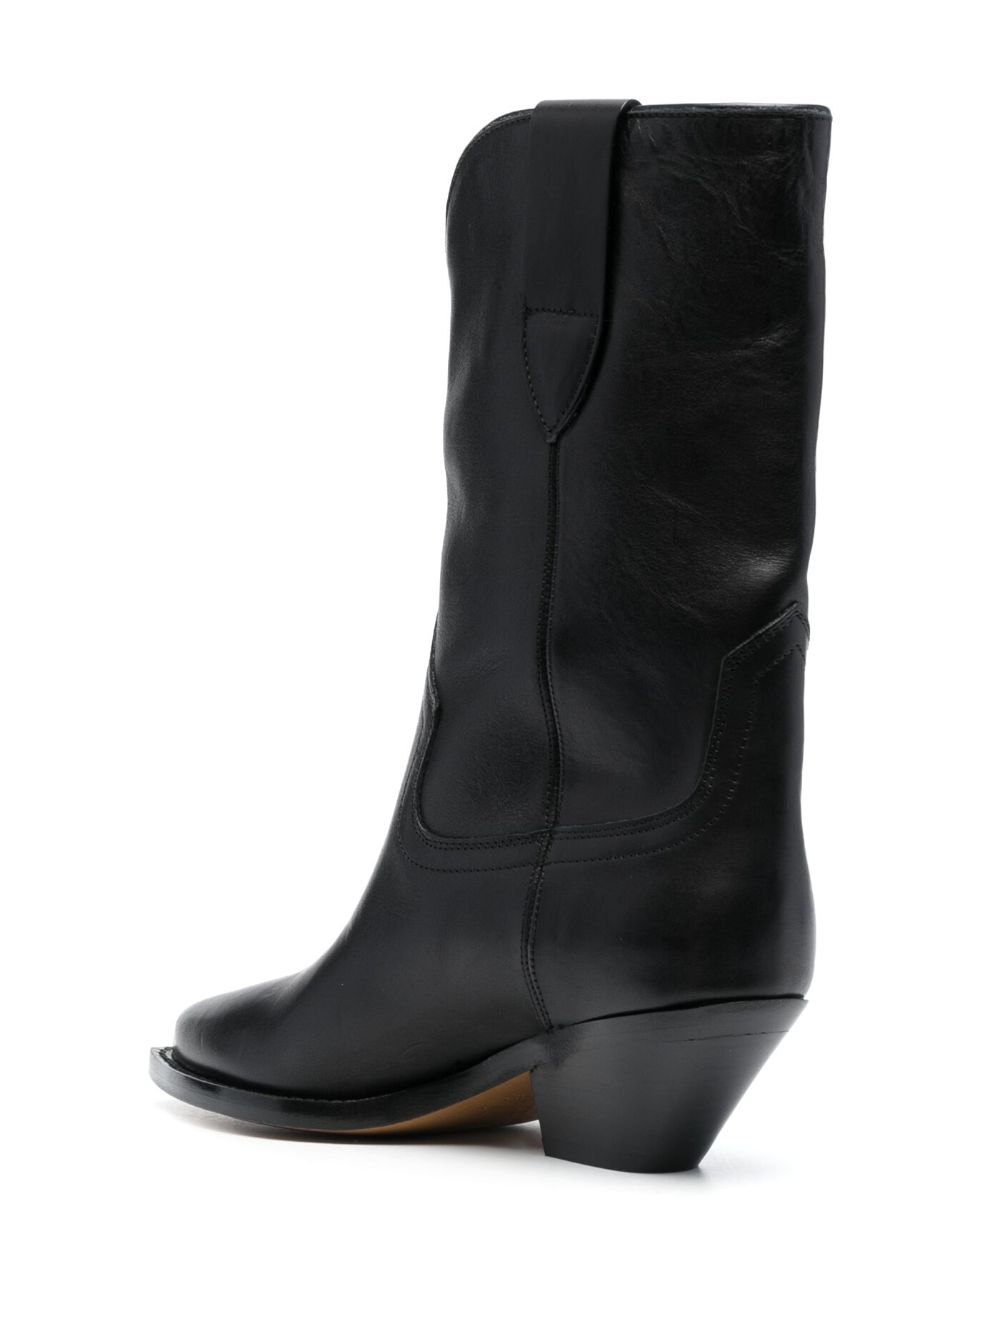 Giày cao gót màu đen bằng da thật Isabel Marant cho phụ nữ